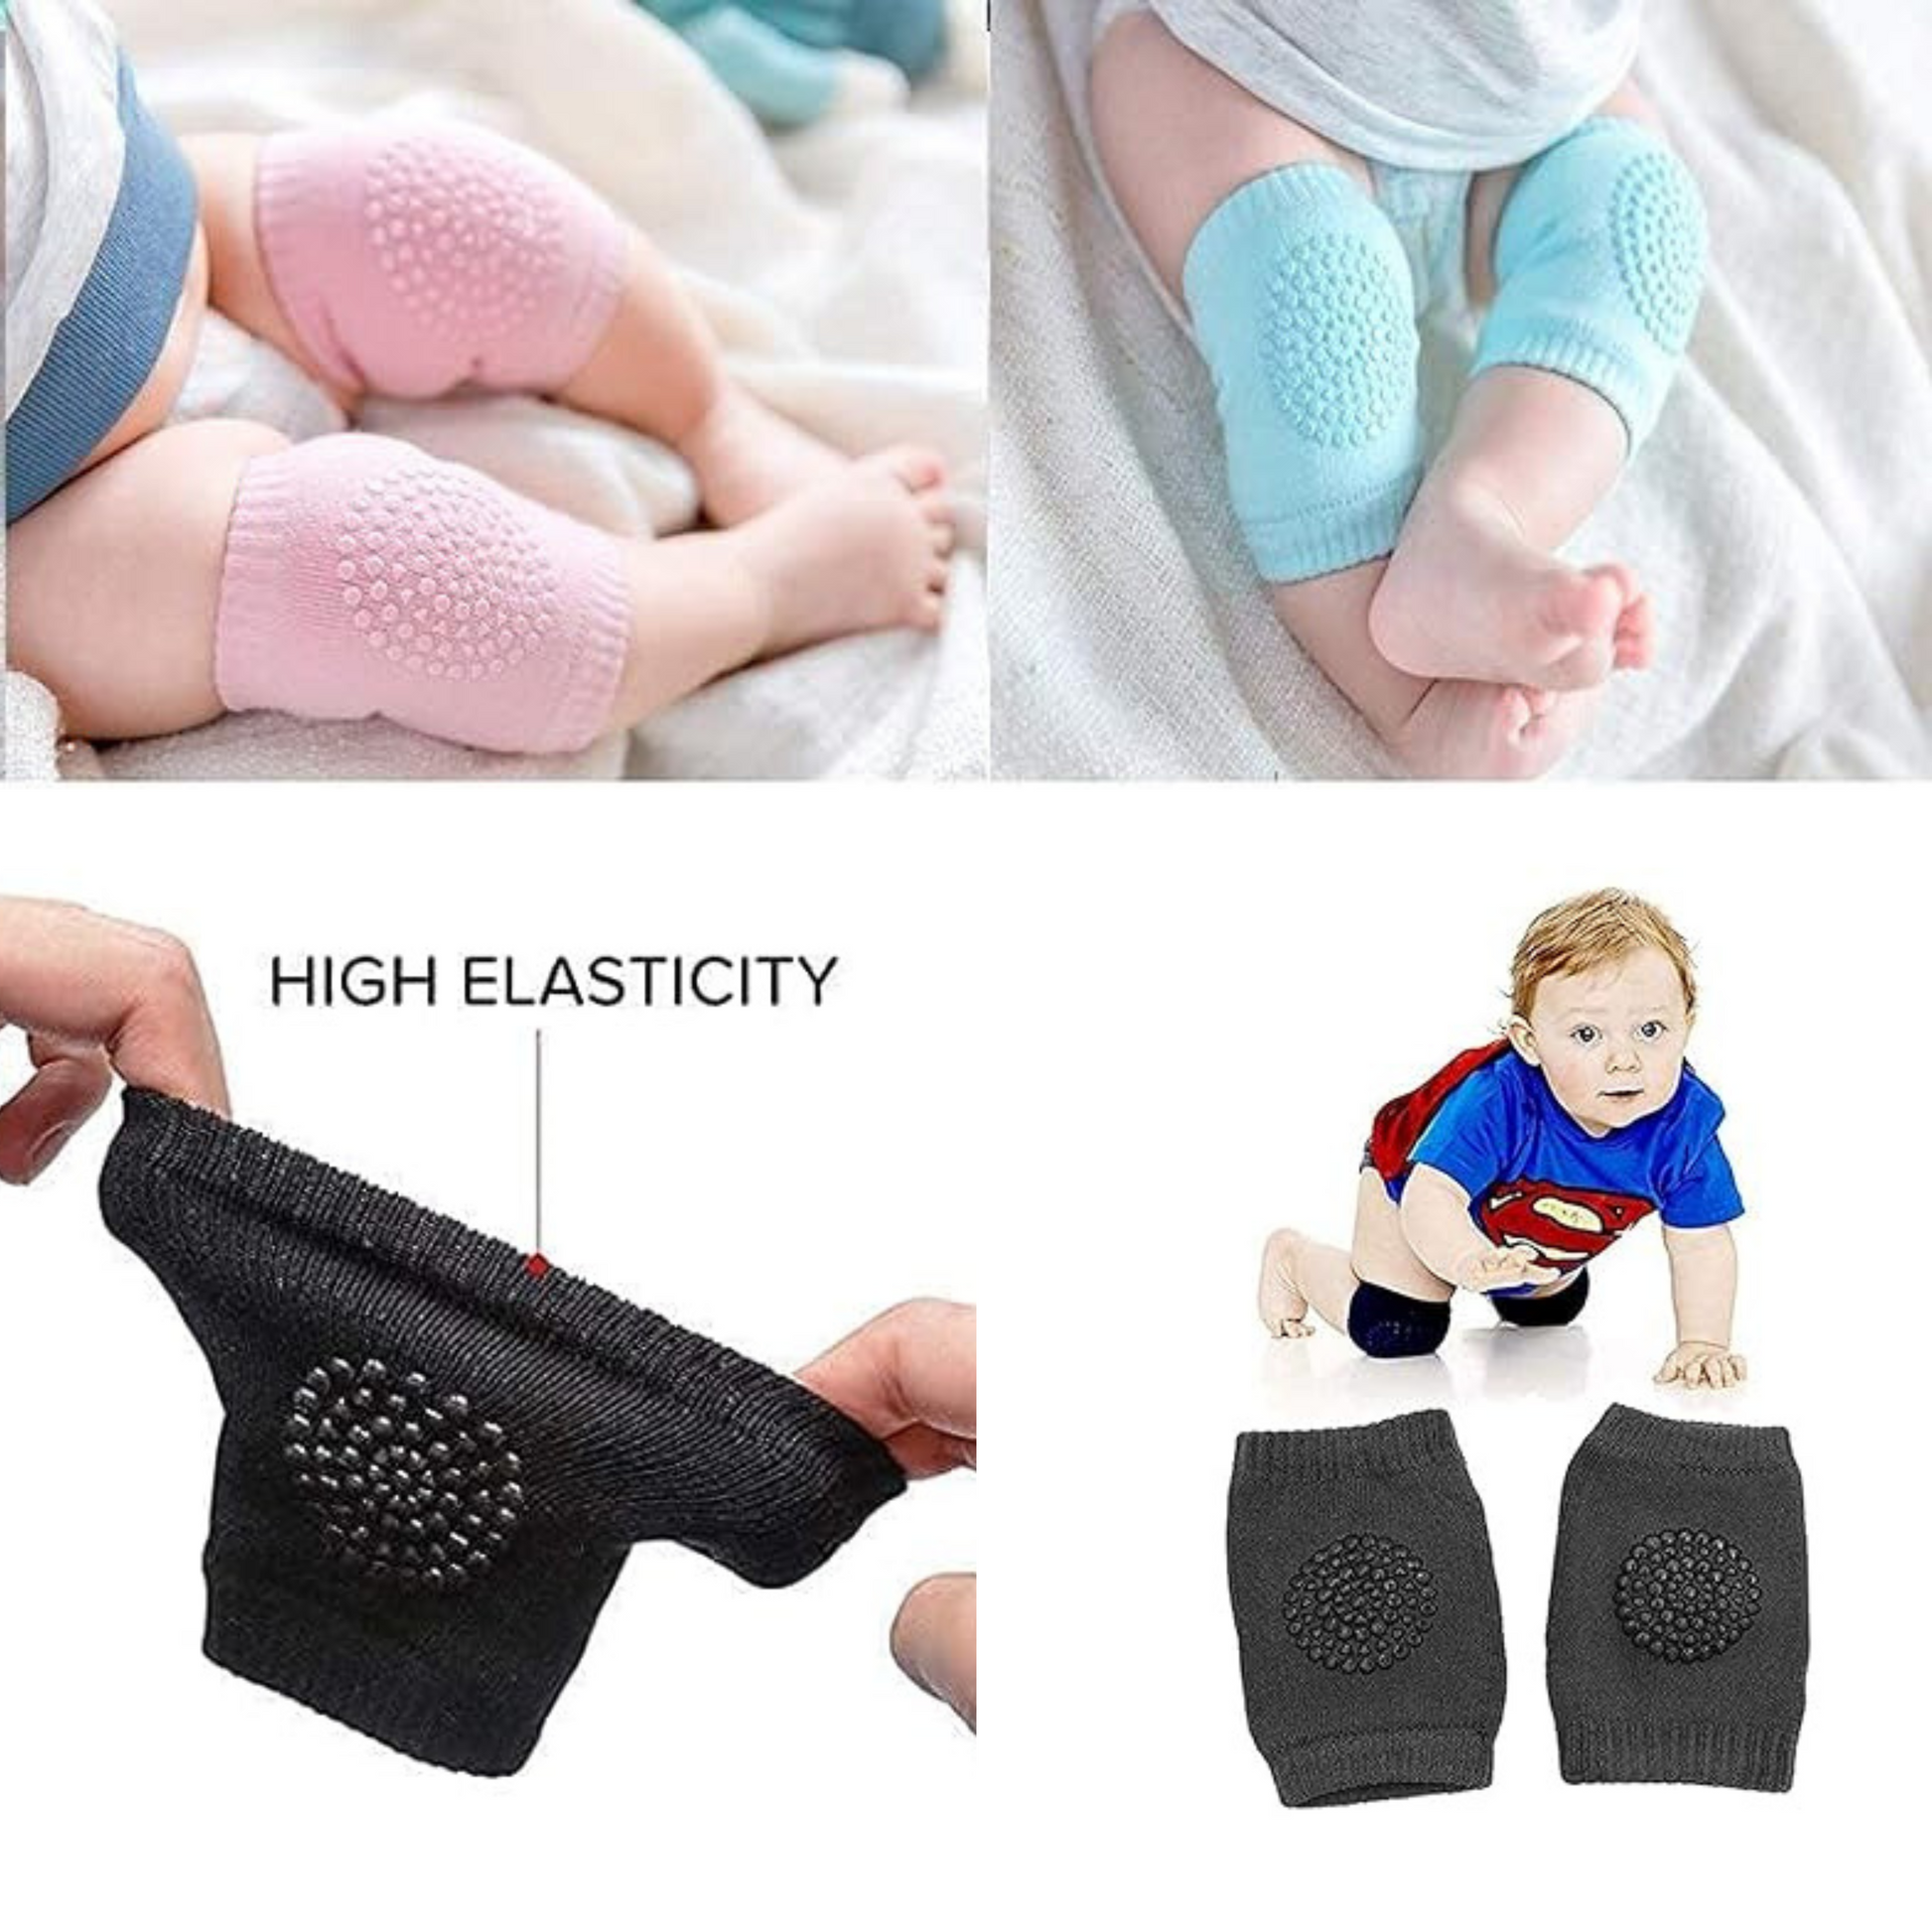 Importikaah-Baby-Gear-Bundle-Knee-Pads-&-Swaddle